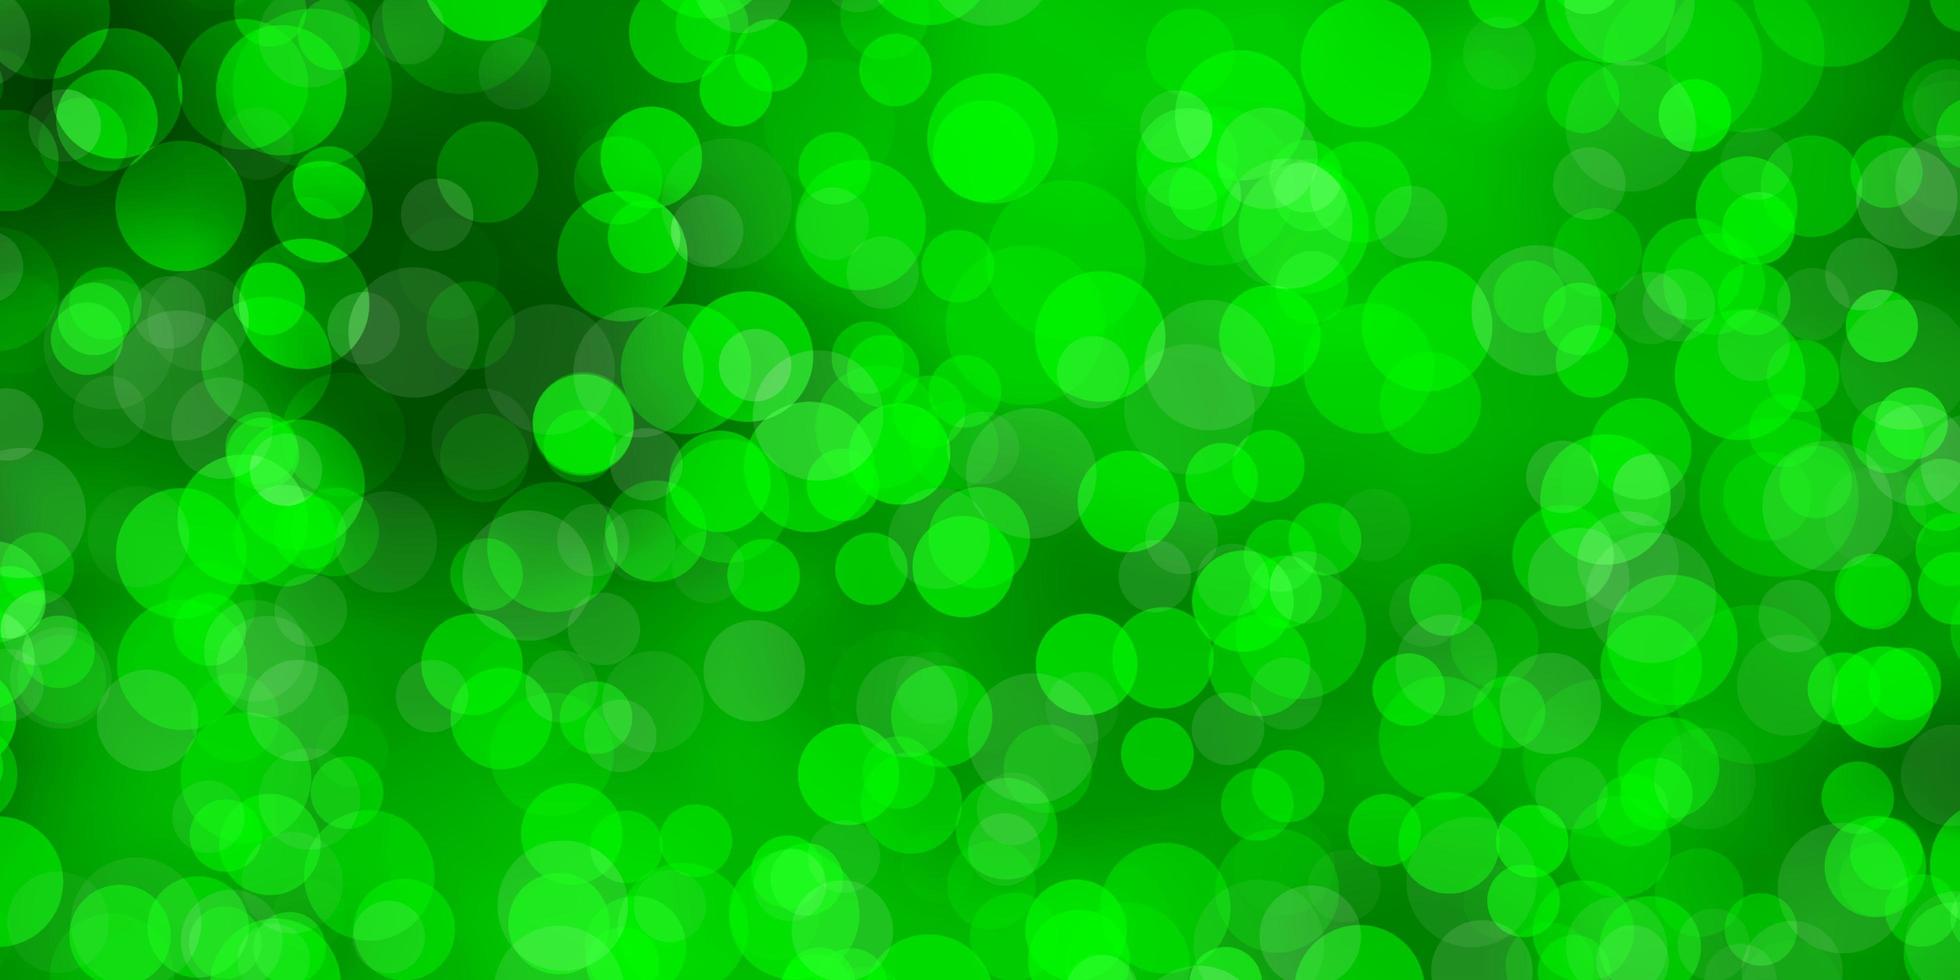 texture vettoriale verde chiaro con dischi illustrazione astratta moderna con motivo a forme circolari colorate per annunci aziendali